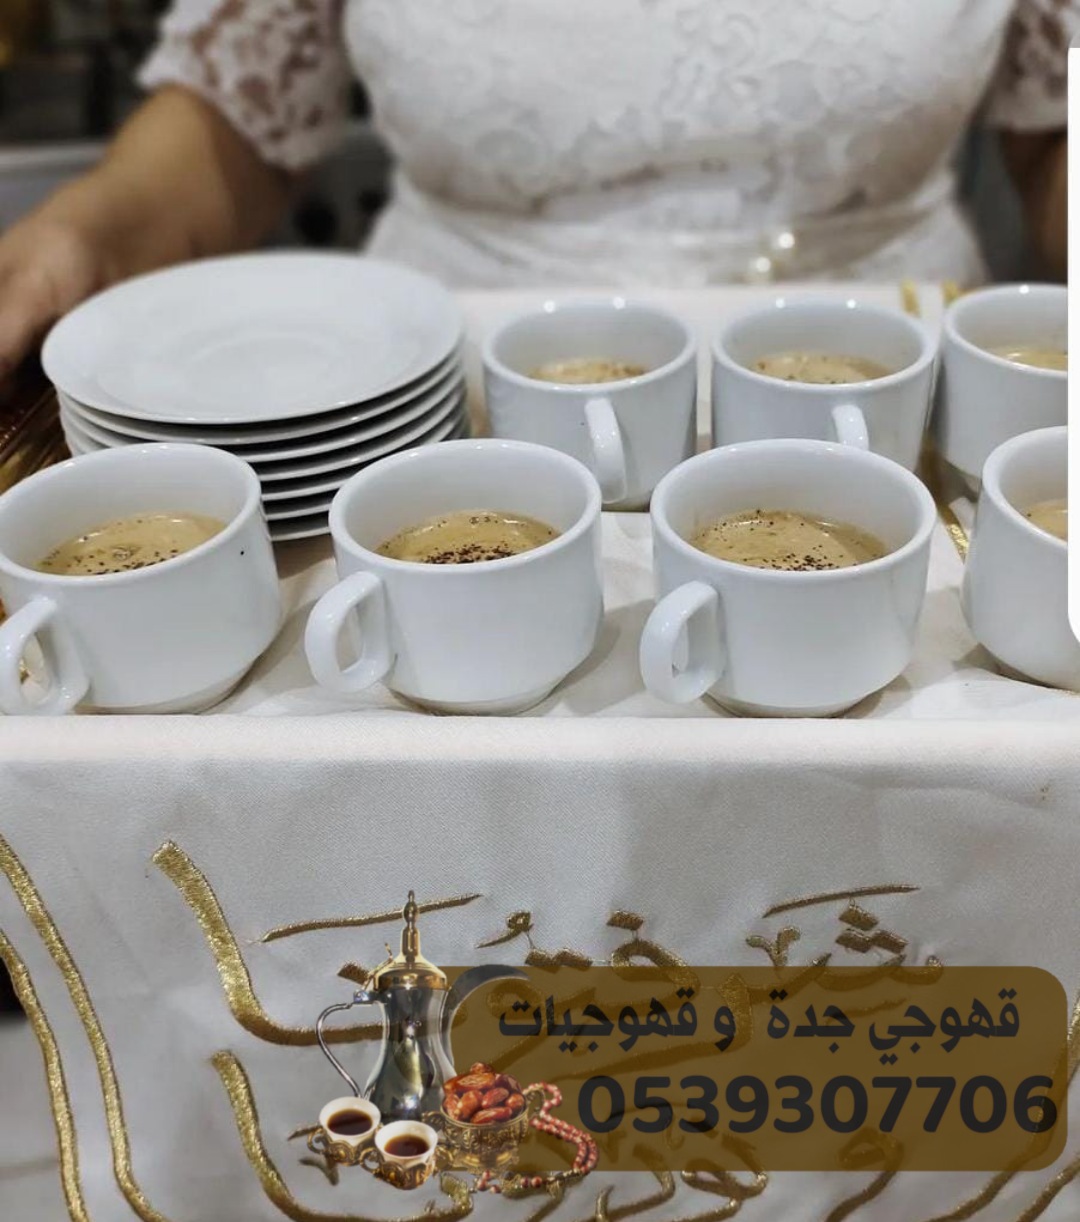 مباشرين قهوة قهوجي في جدة و قهوجيات 0539307706 170800977869232